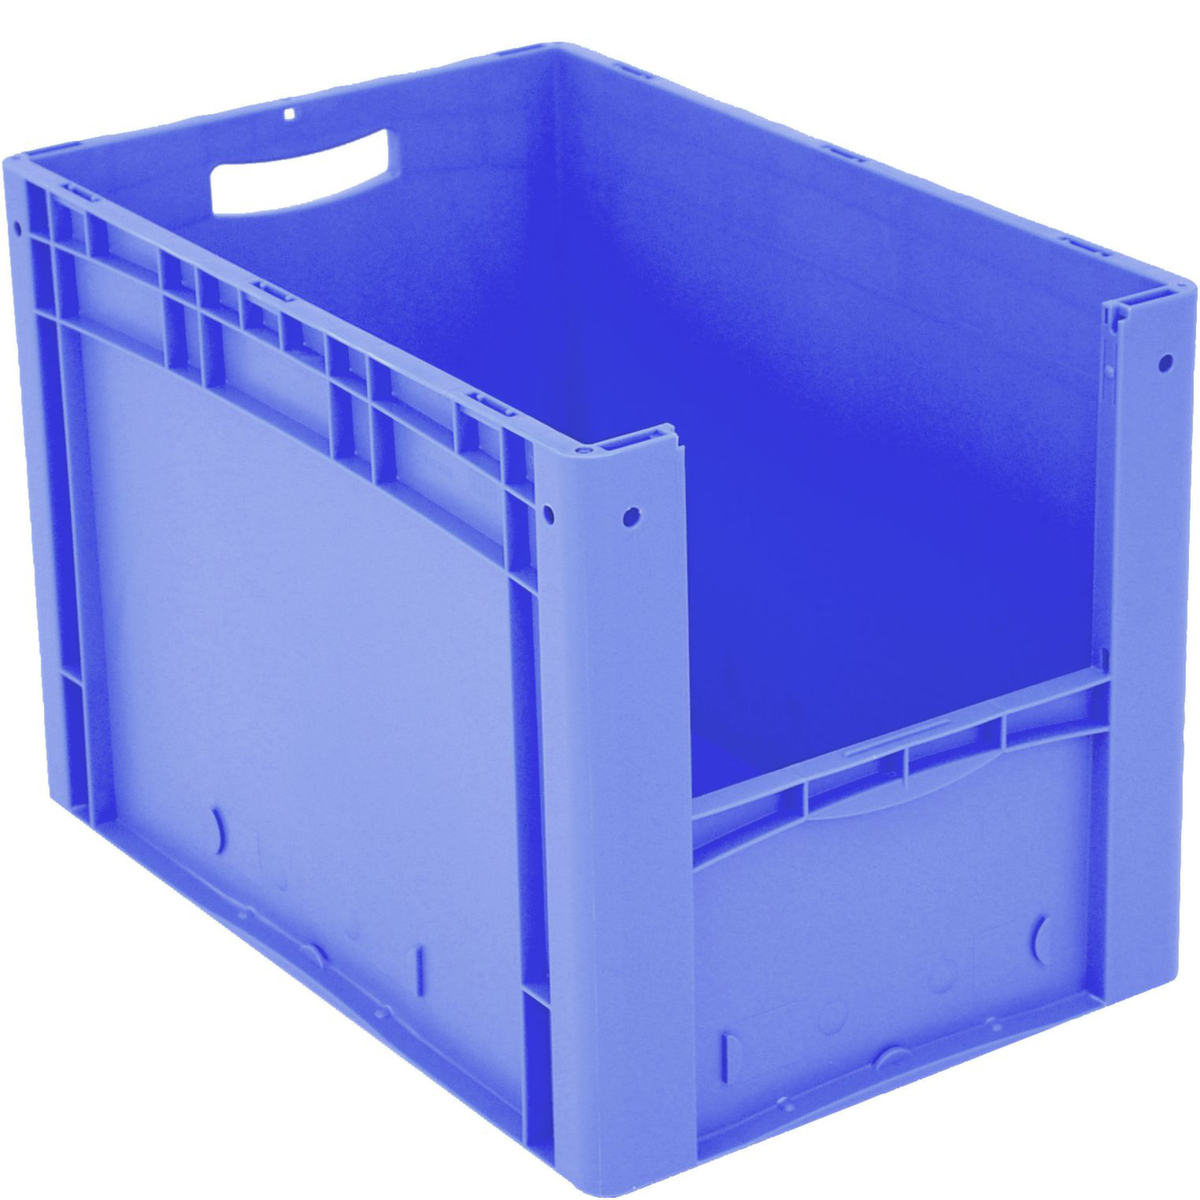 Euronorm zichtbare opslagcontainer met toegangsopening, blauw, HxLxB 420x600x400 mm  ZOOM